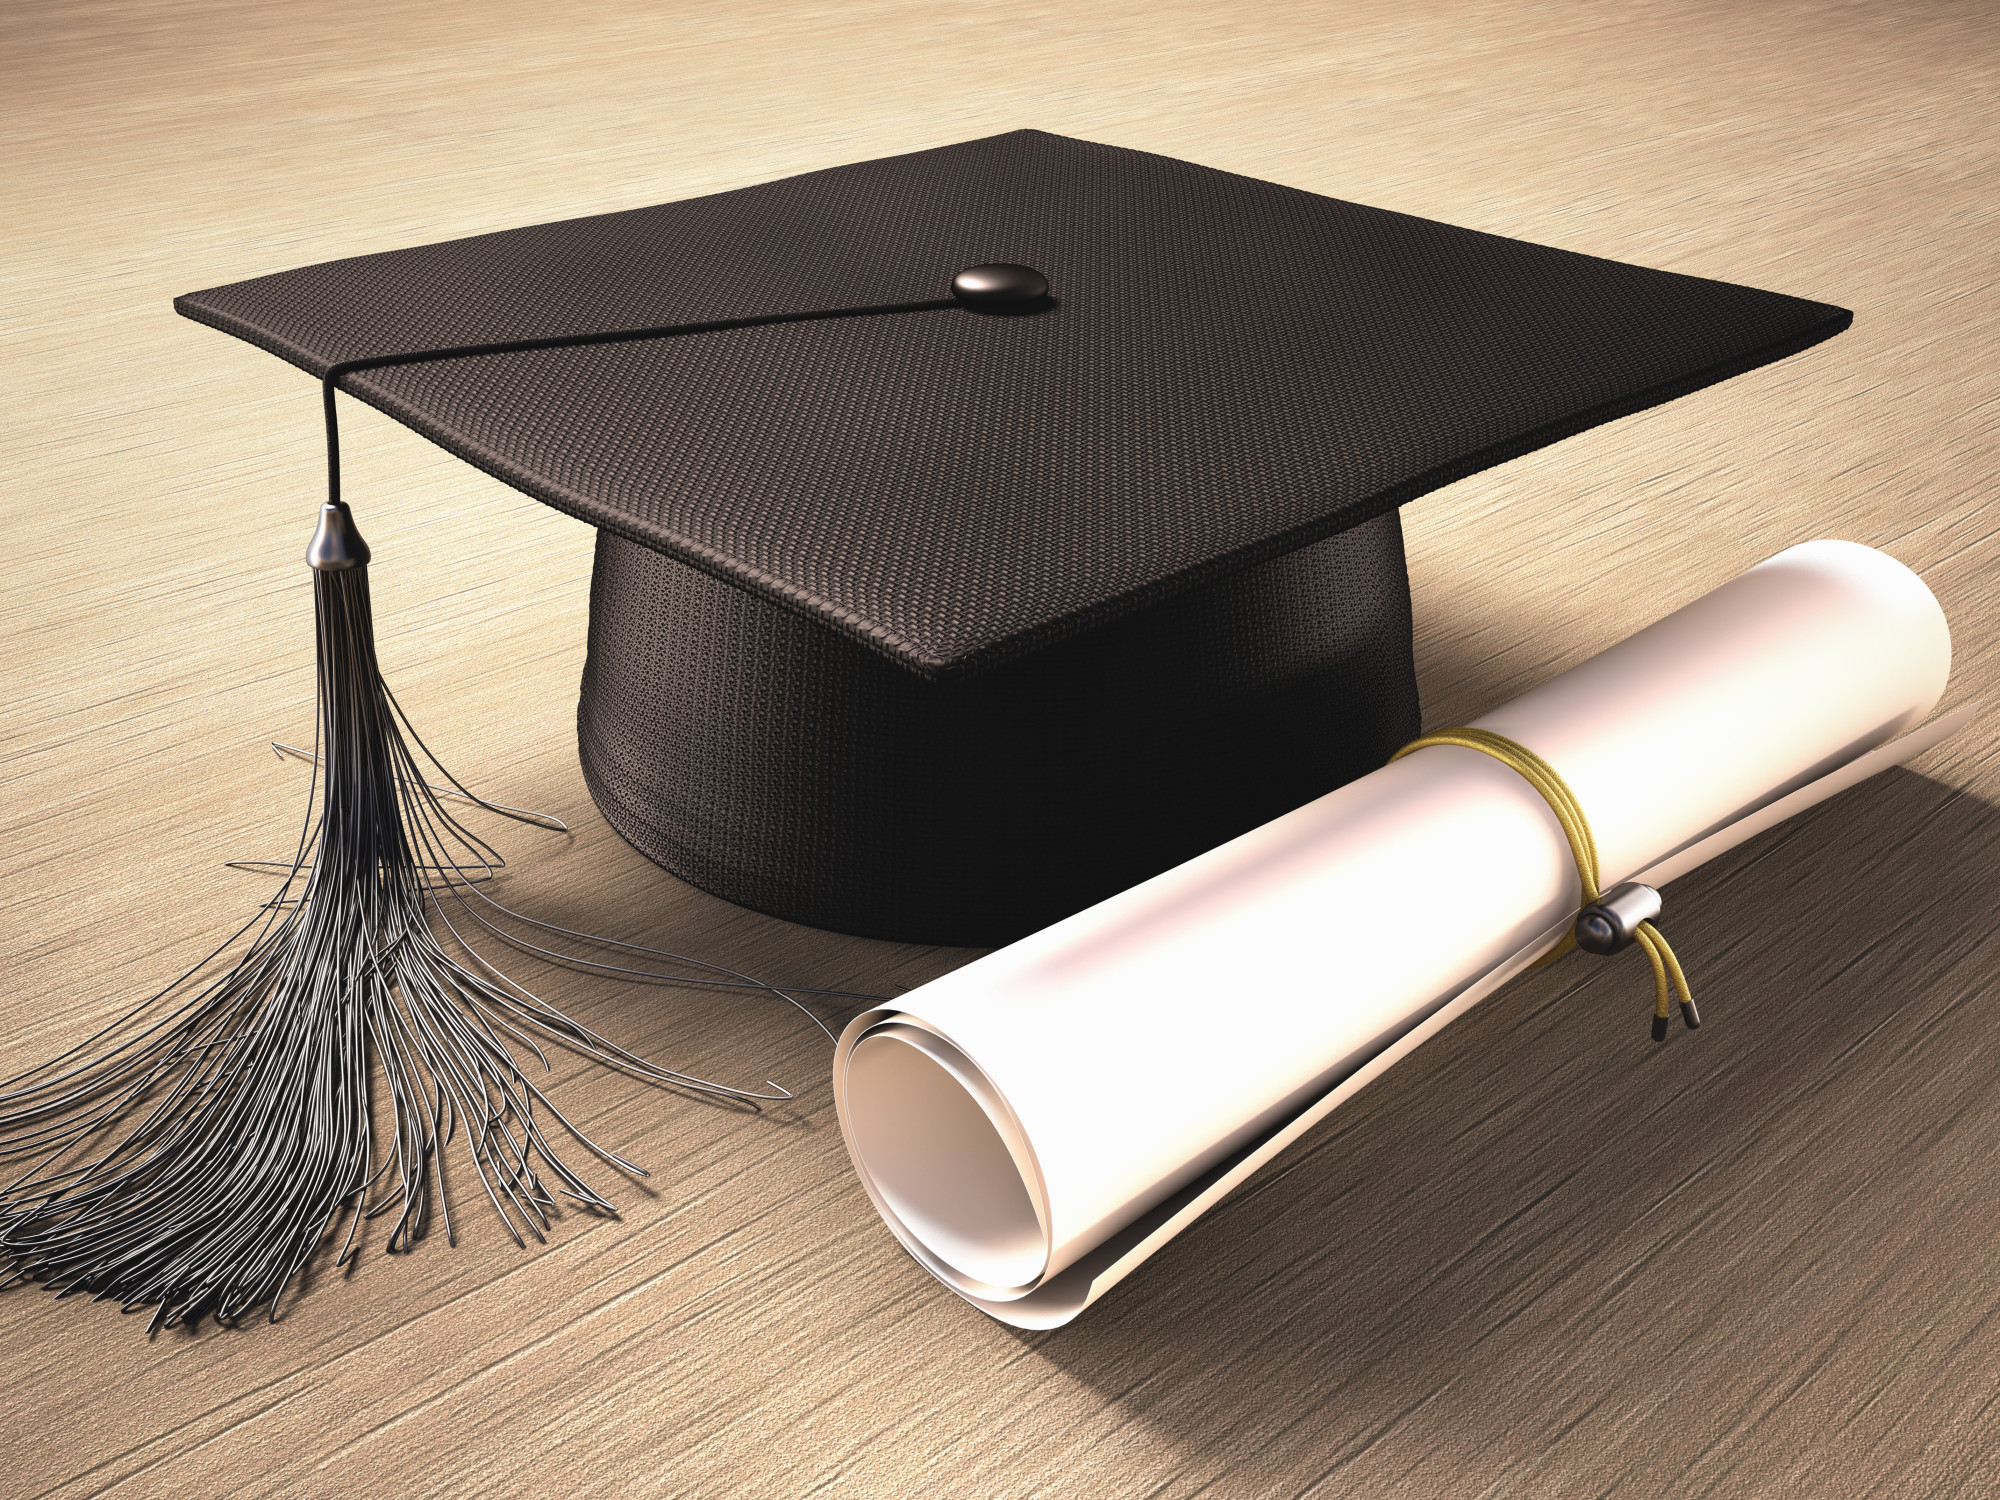 Should You Buy A Fake Diploma? 5 Reasons You May Need One